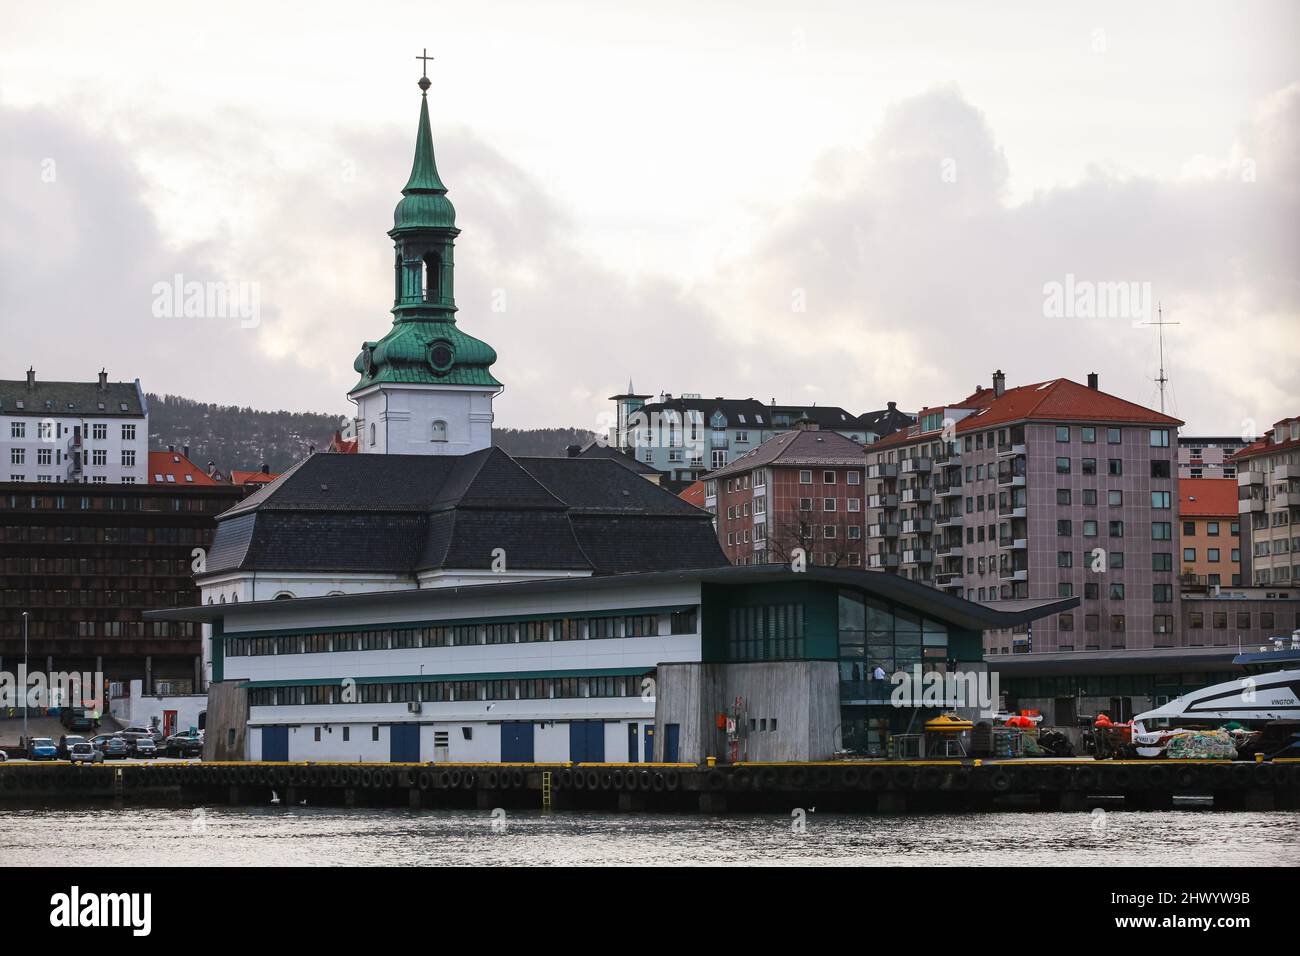 Bergen, Norwegen - 14. November 2017: Küstenansicht der Stadt Bergen mit dem Turm von Nykirken oder der neuen Kirche, einer Pfarrkirche der Kirche von Norwegen in B Stockfoto